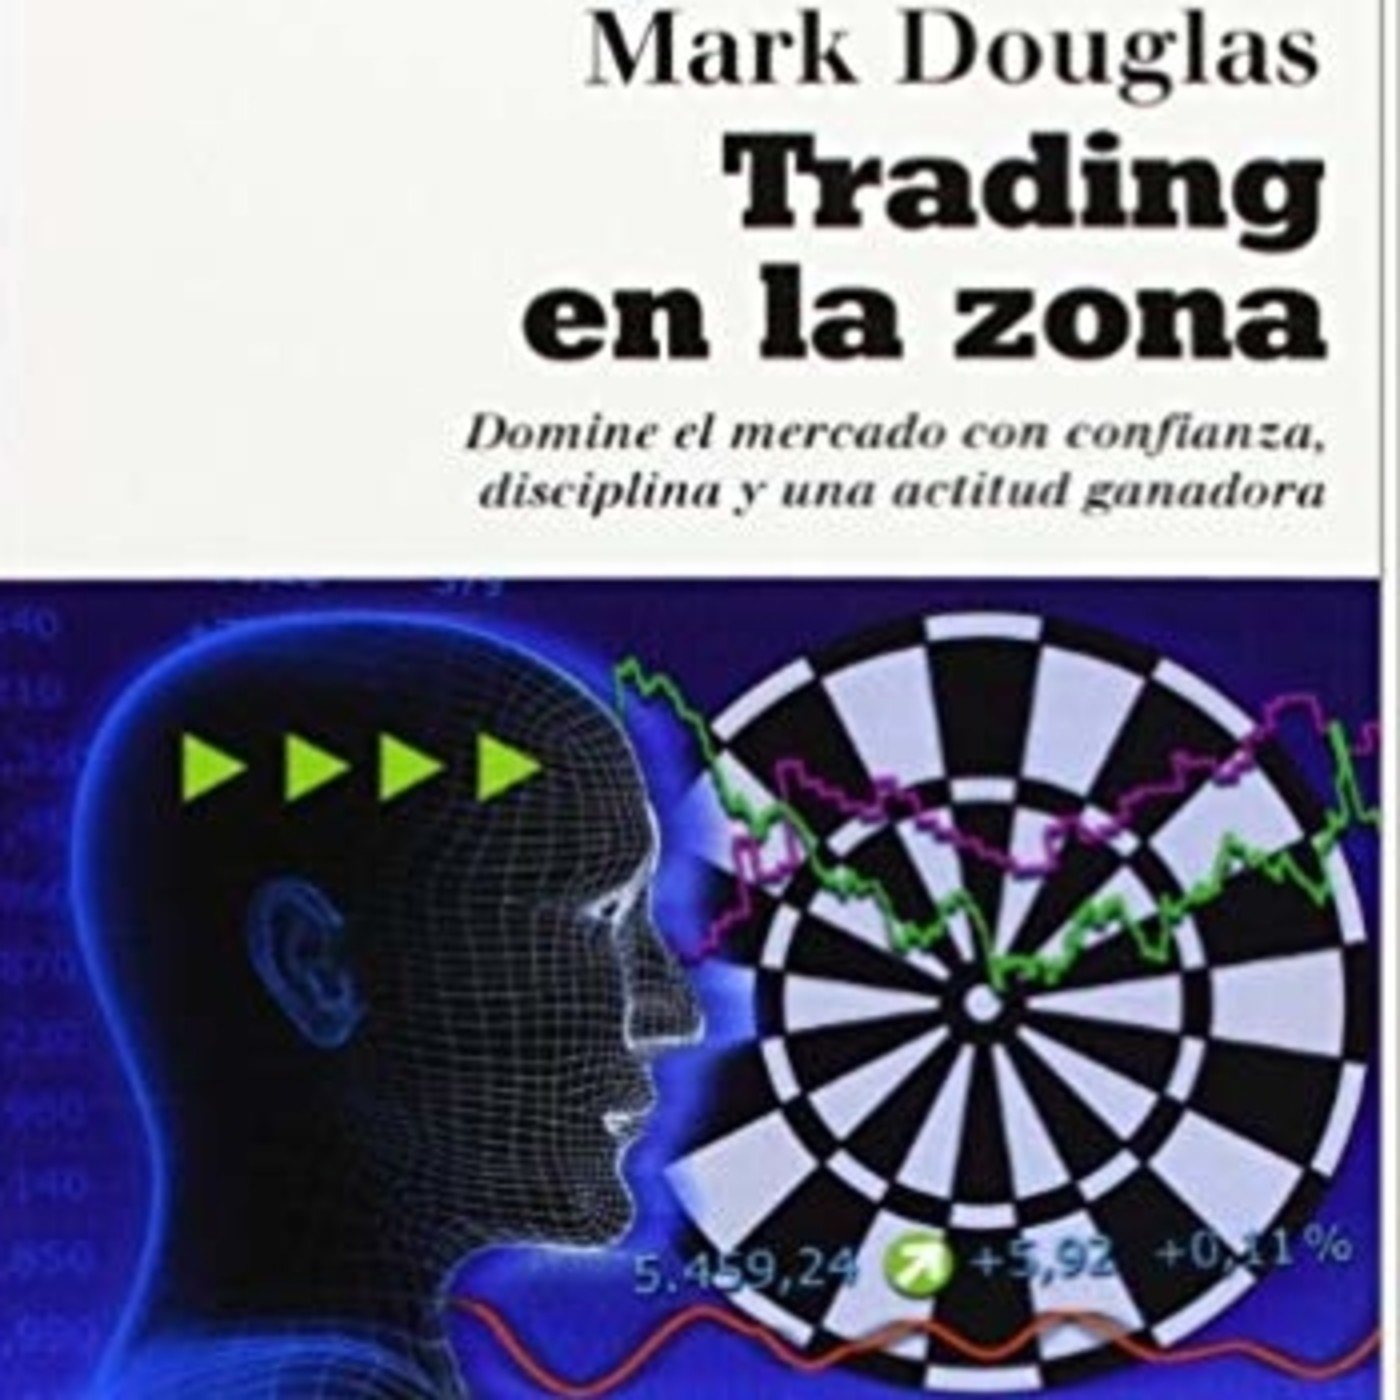 Cap 2 Trading en la Zona Mark Douglas Audiolibro completo libros para traders